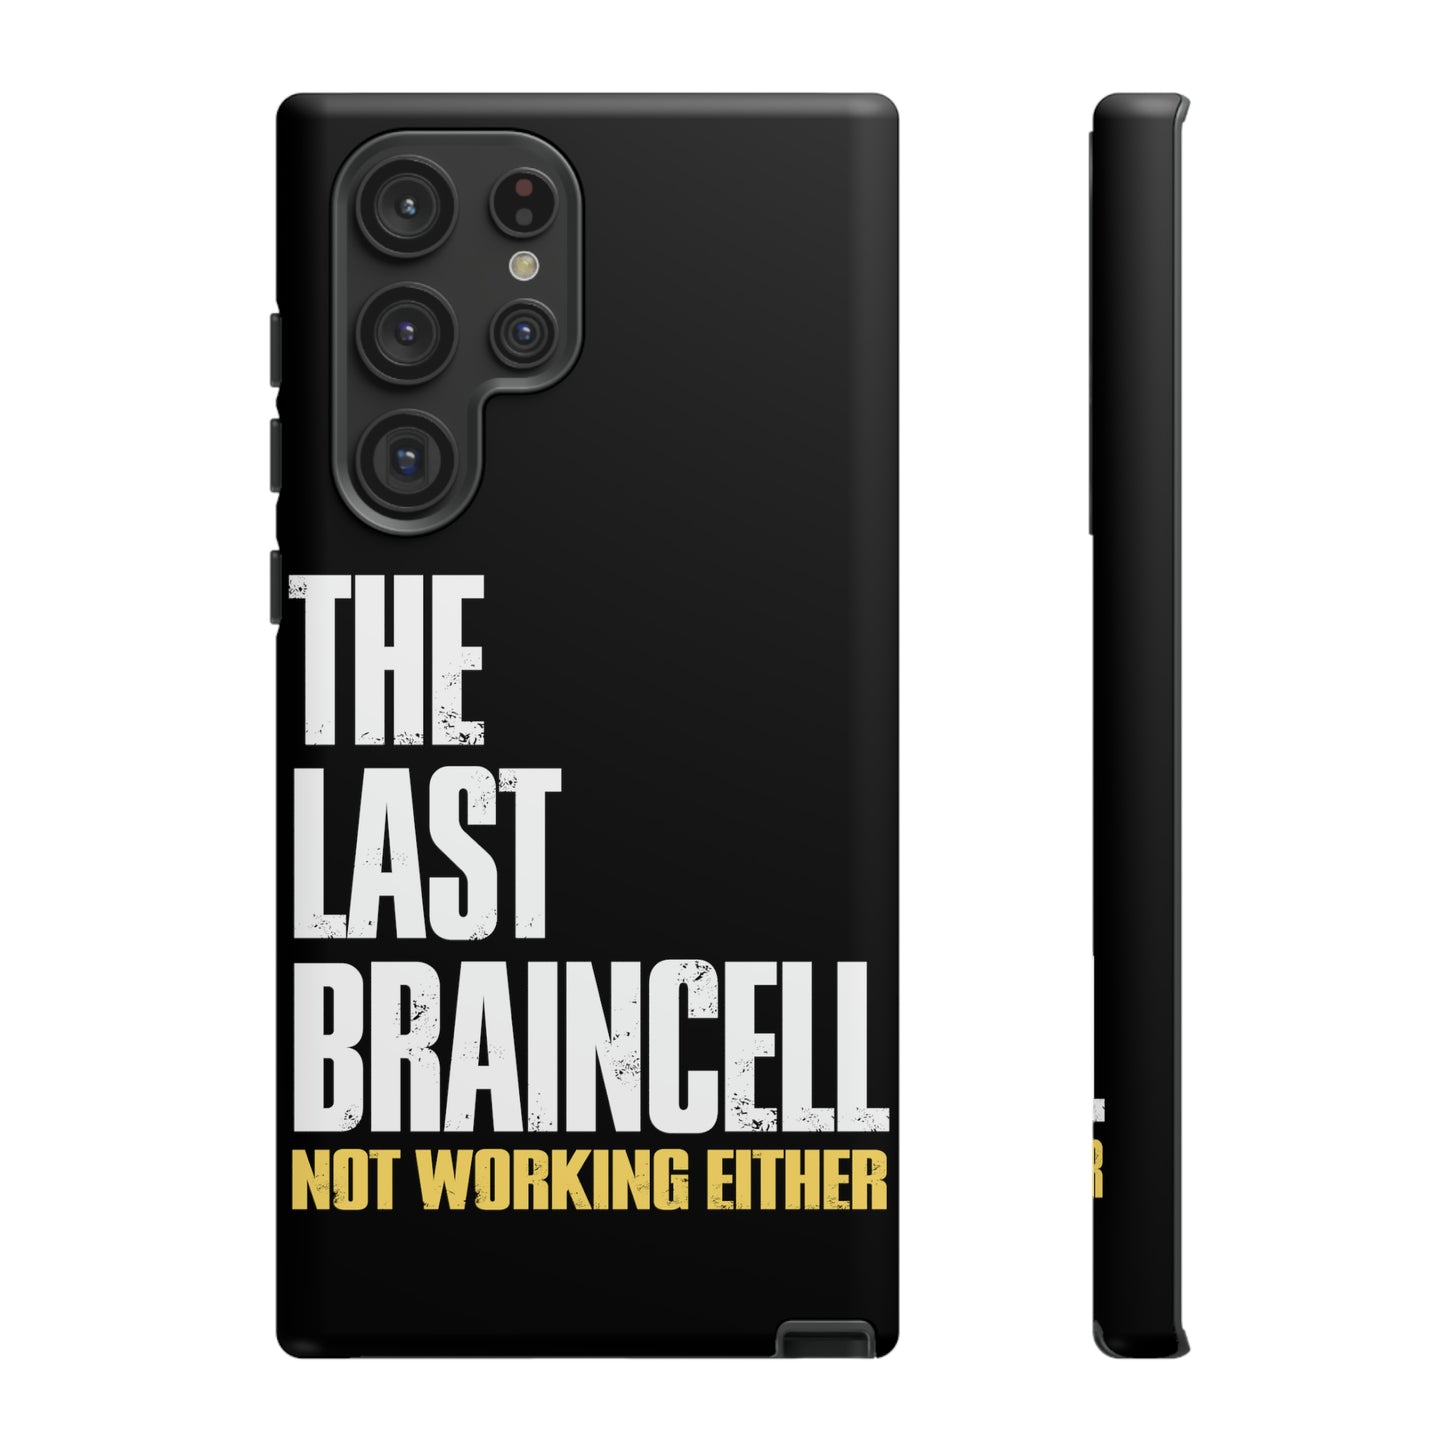 TLOU Tough Case - The Last Braincell